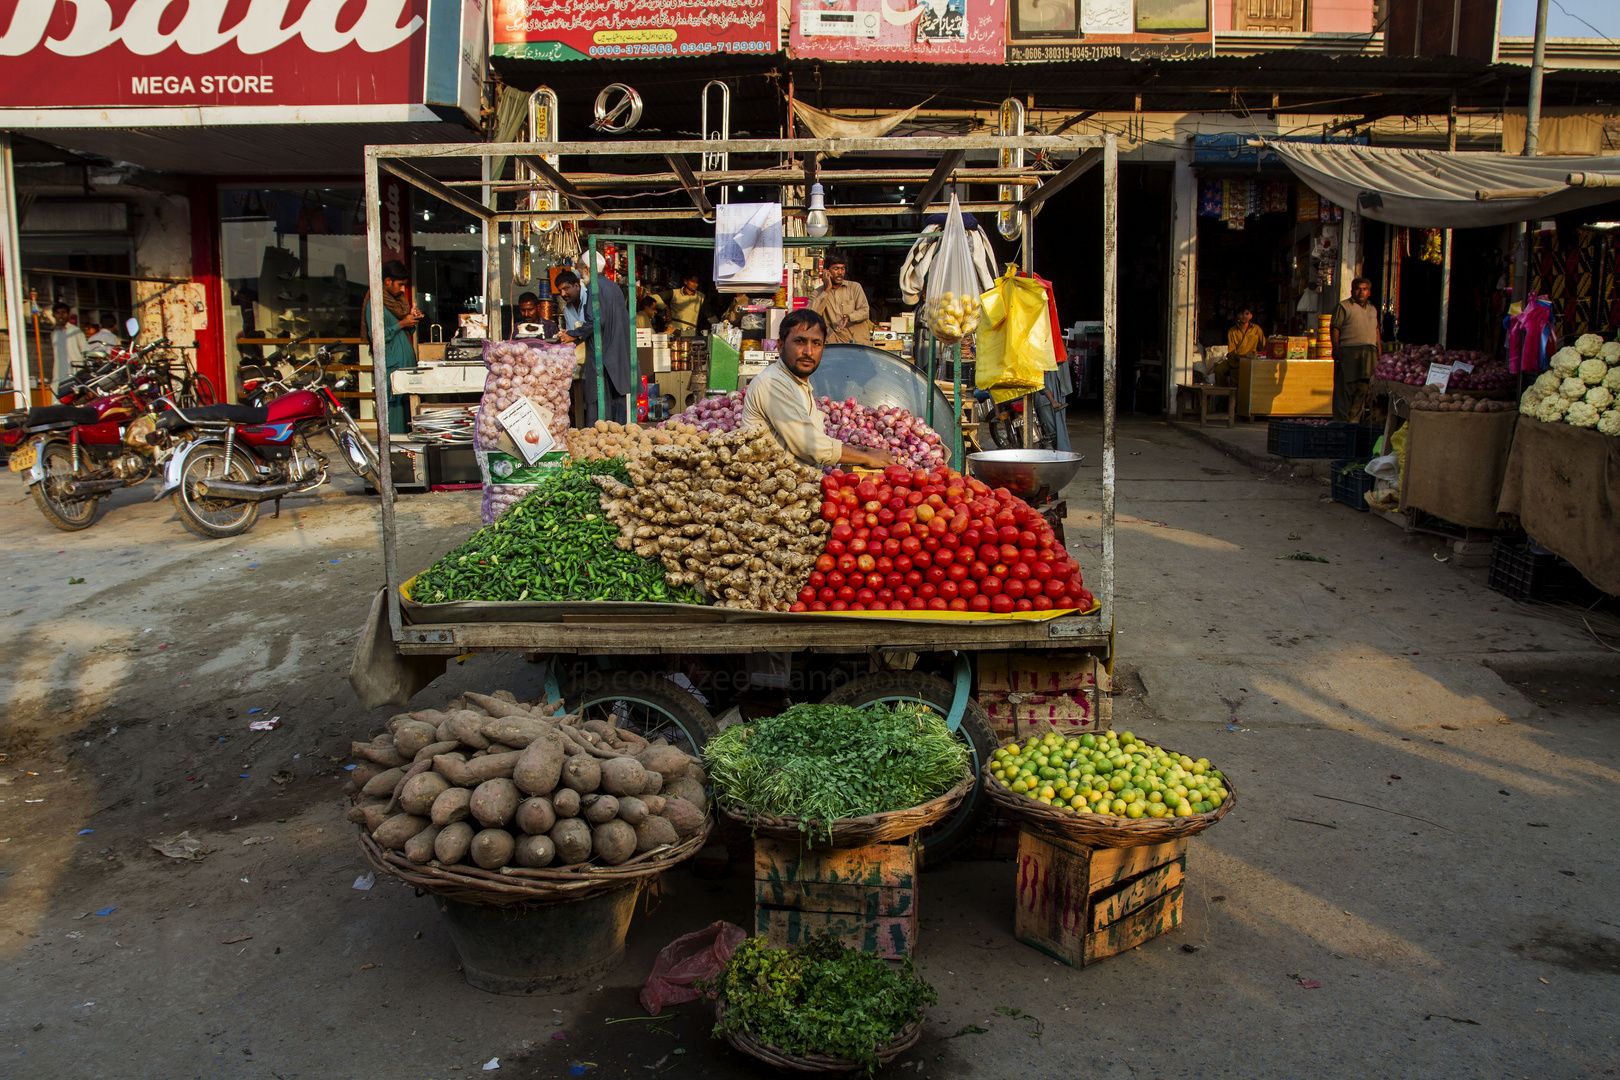 A local vendor prepares a display of vegetables.